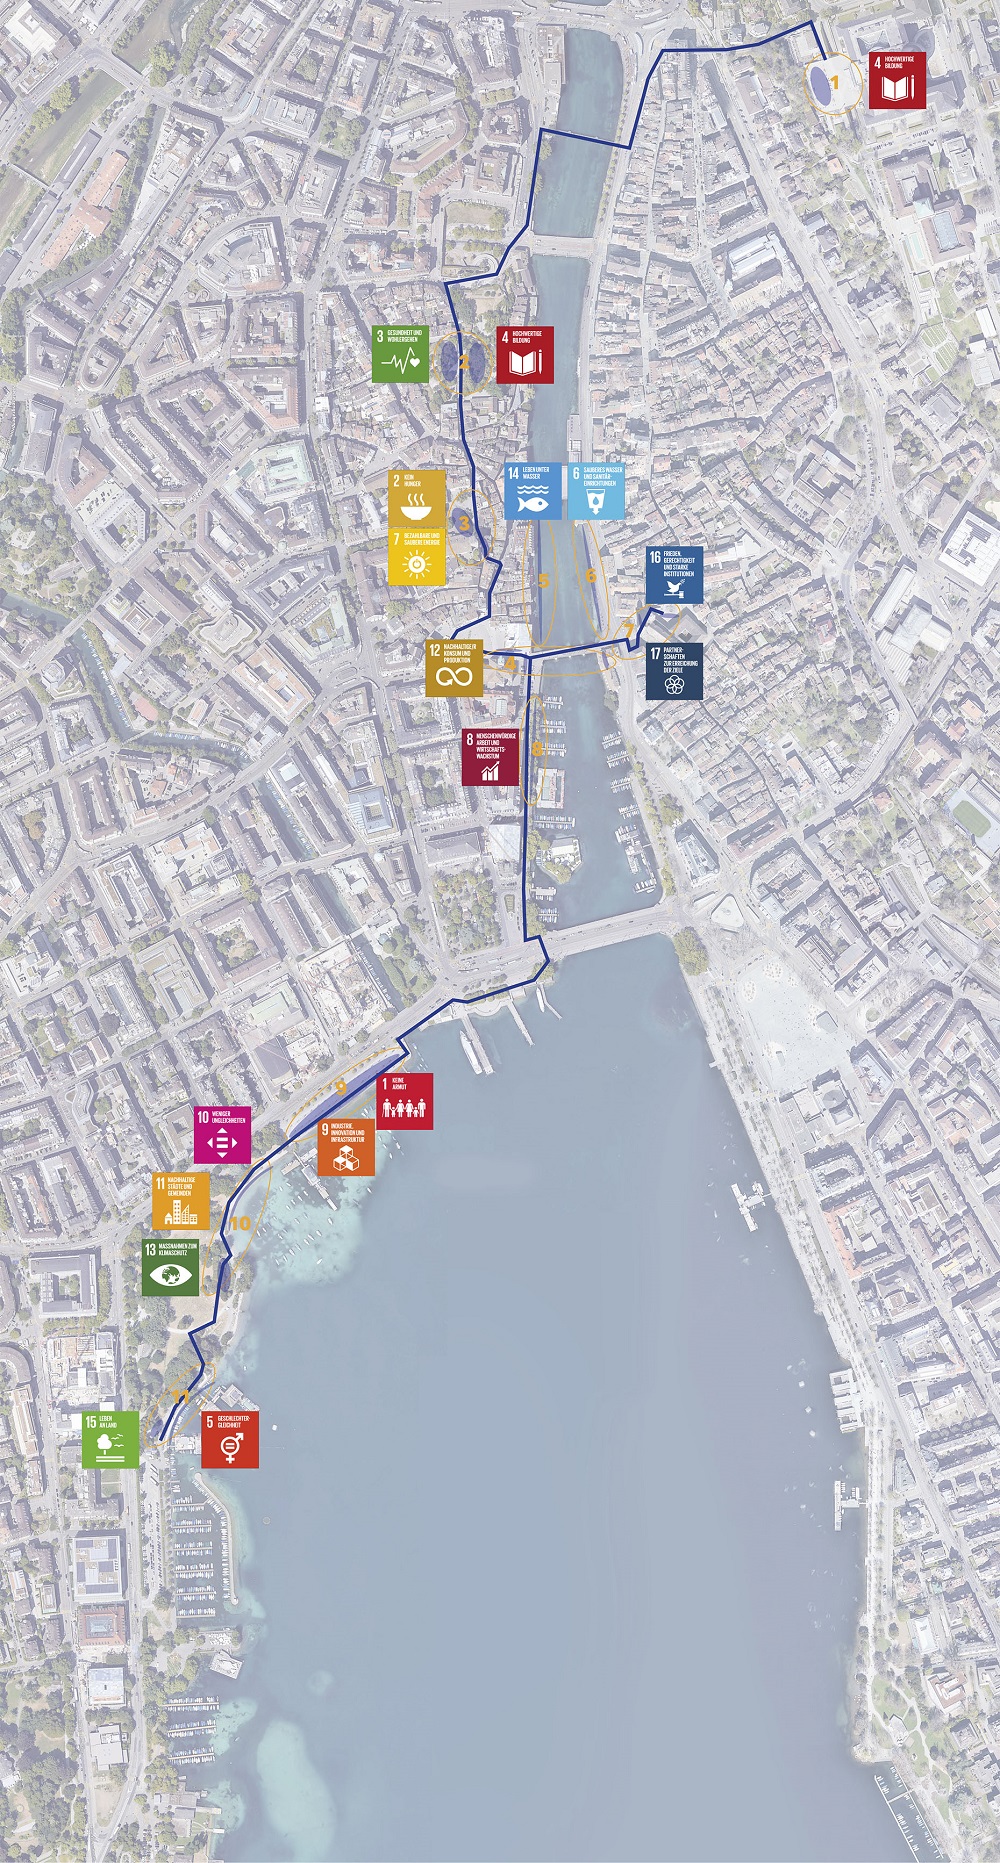 Routenplan der open your eyes Fotoausstellung von der ETH Polyterrasse über die Altstadt bis zum Seehafen Enge